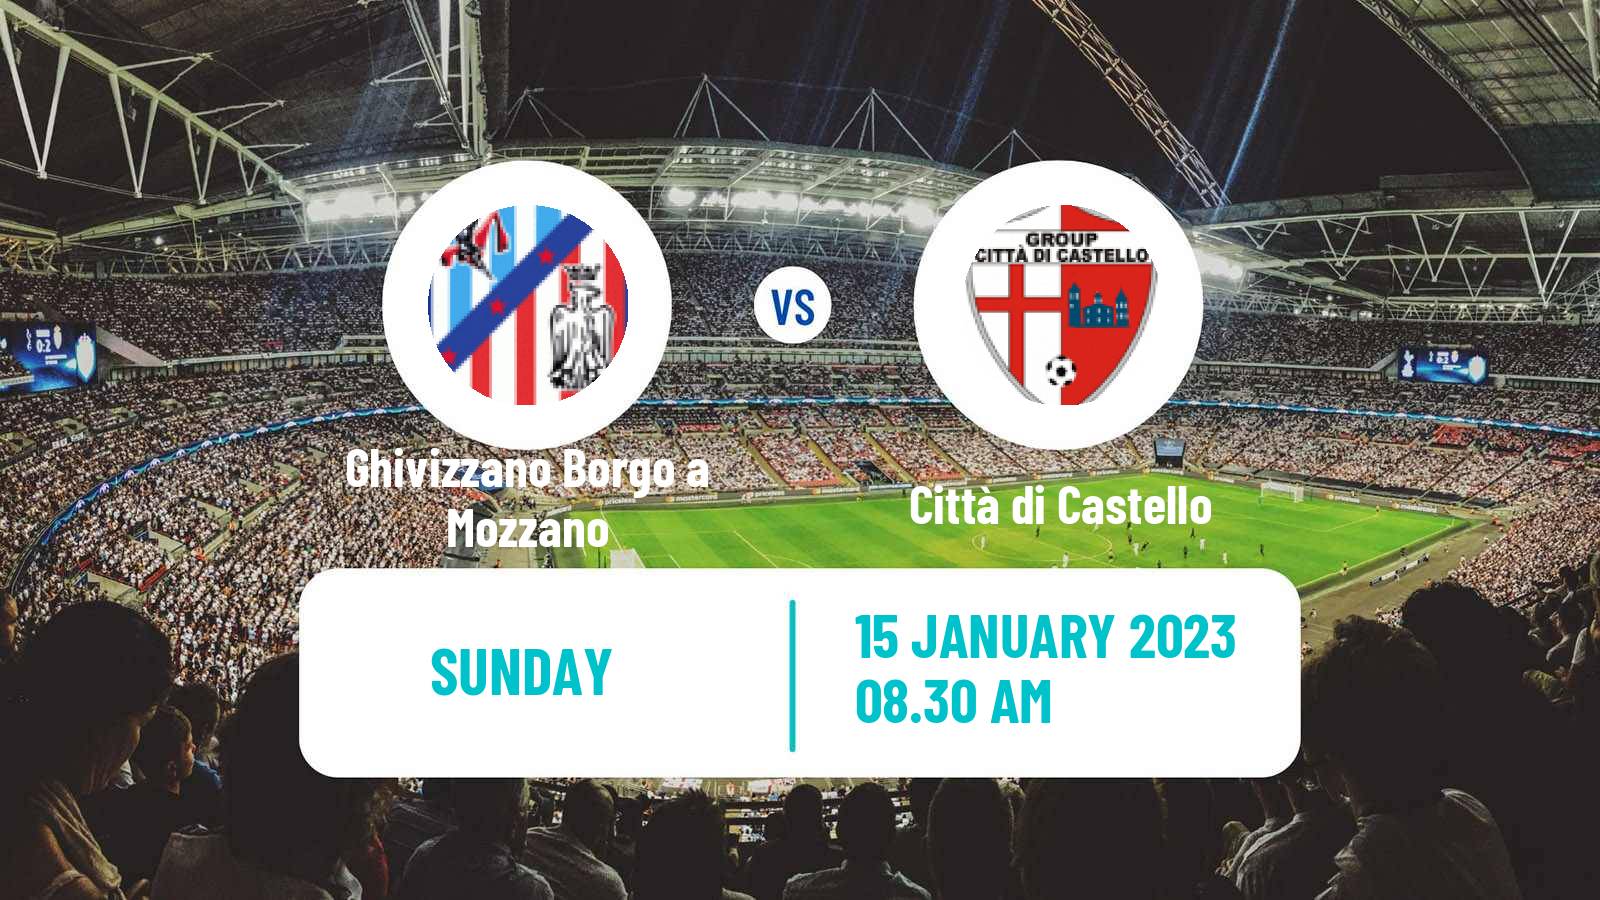 Soccer Italian Serie D - Group E Ghivizzano Borgo a Mozzano - Città di Castello